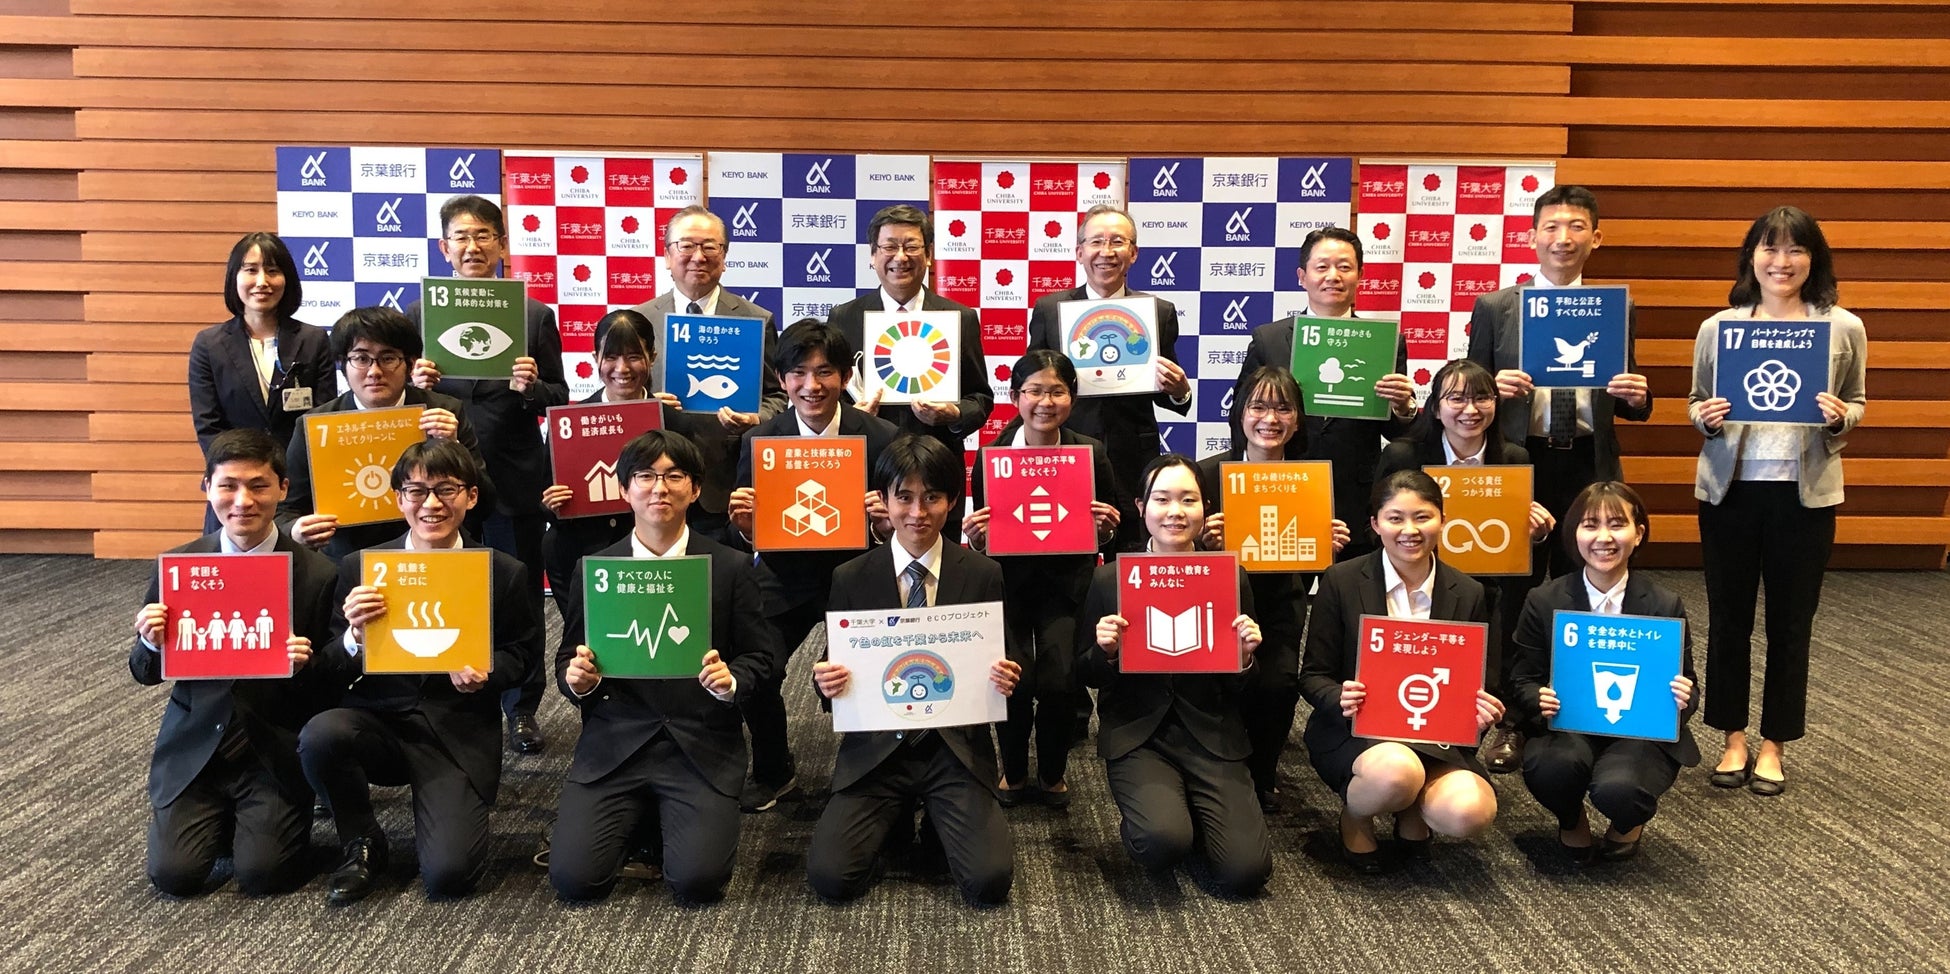 大学生と銀行がコラボして、17のSDGs企画に挑戦「千葉大学×京葉銀行ecoプロジェクト」が７年目突入